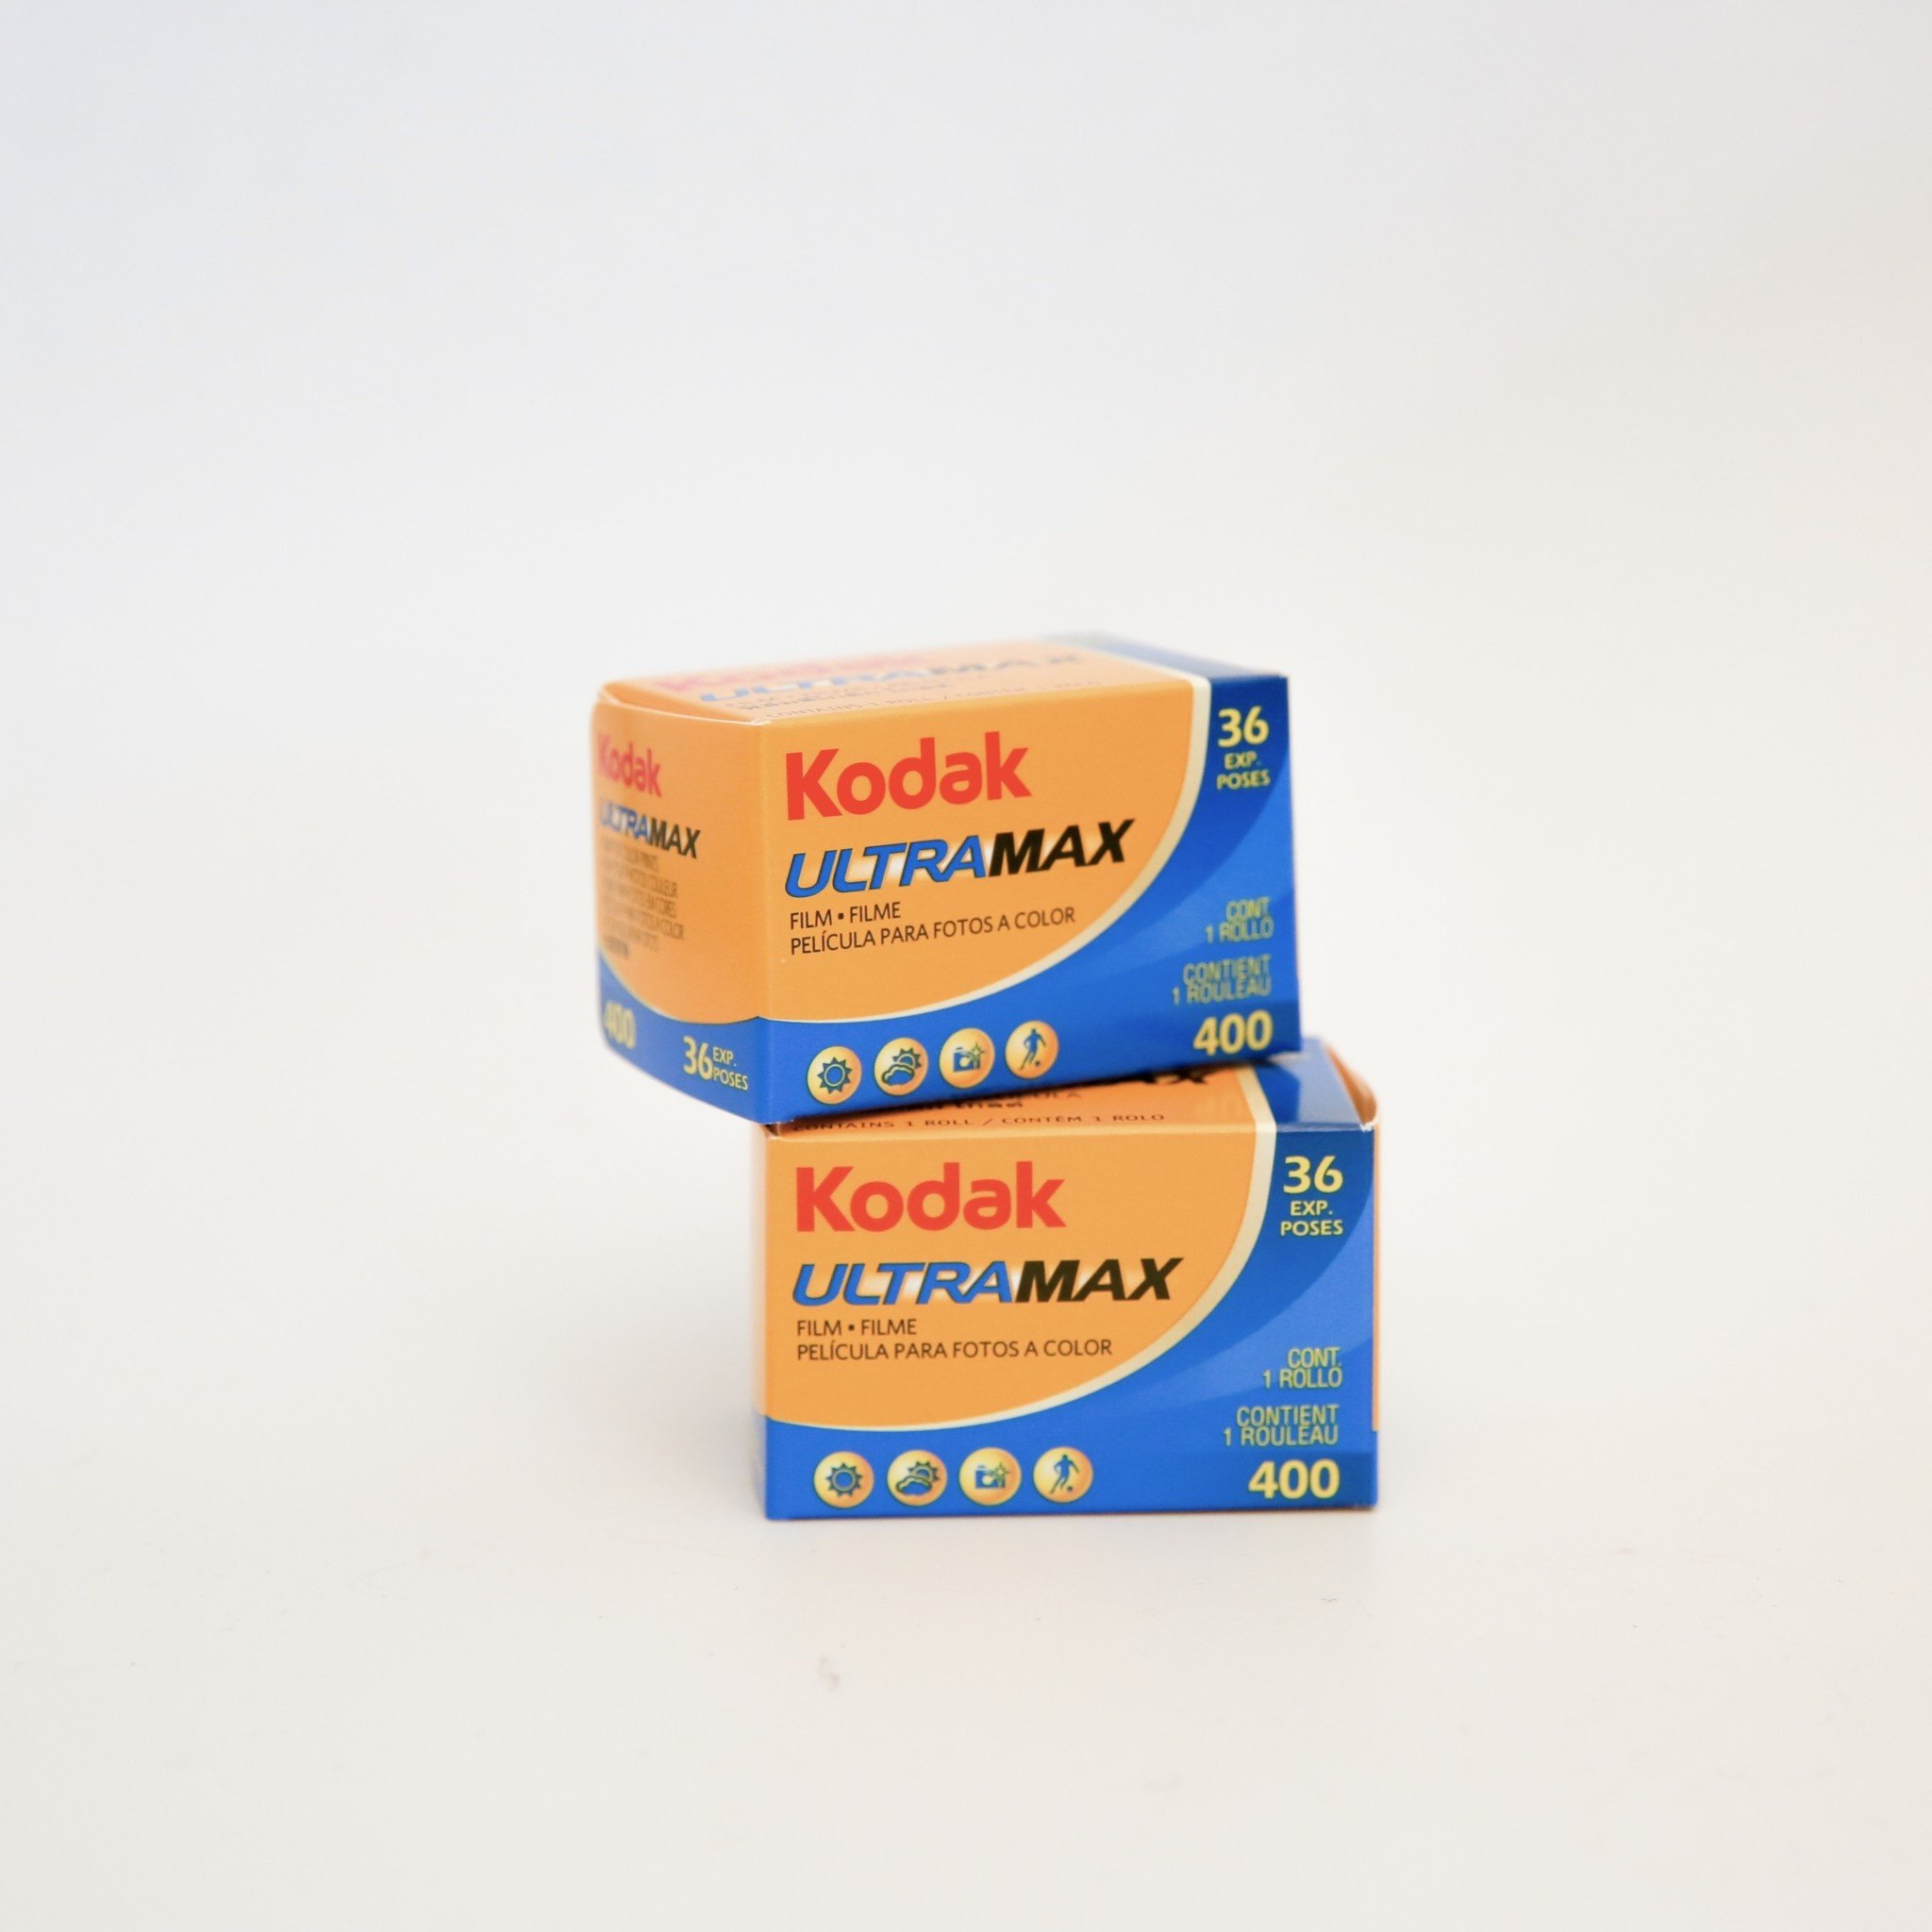 Kodak UltraMax 400 Color Negative Film, 35mm, 3-Pack